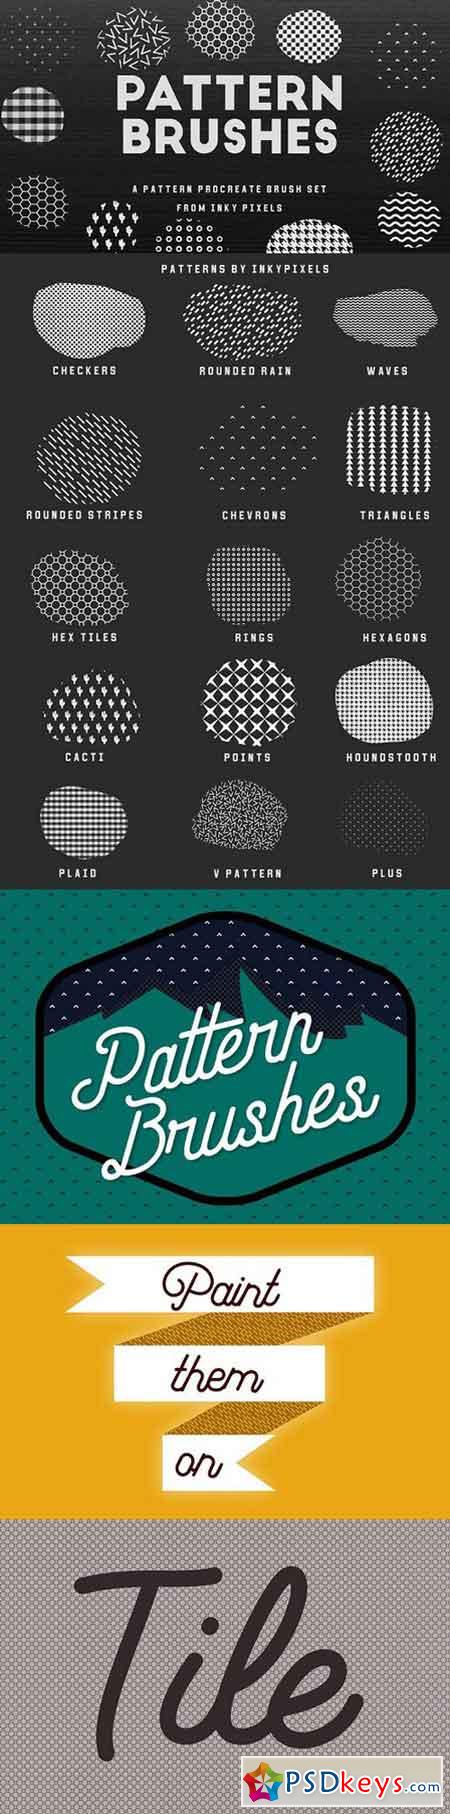 15 Procreate Pattern Brushes 1530632